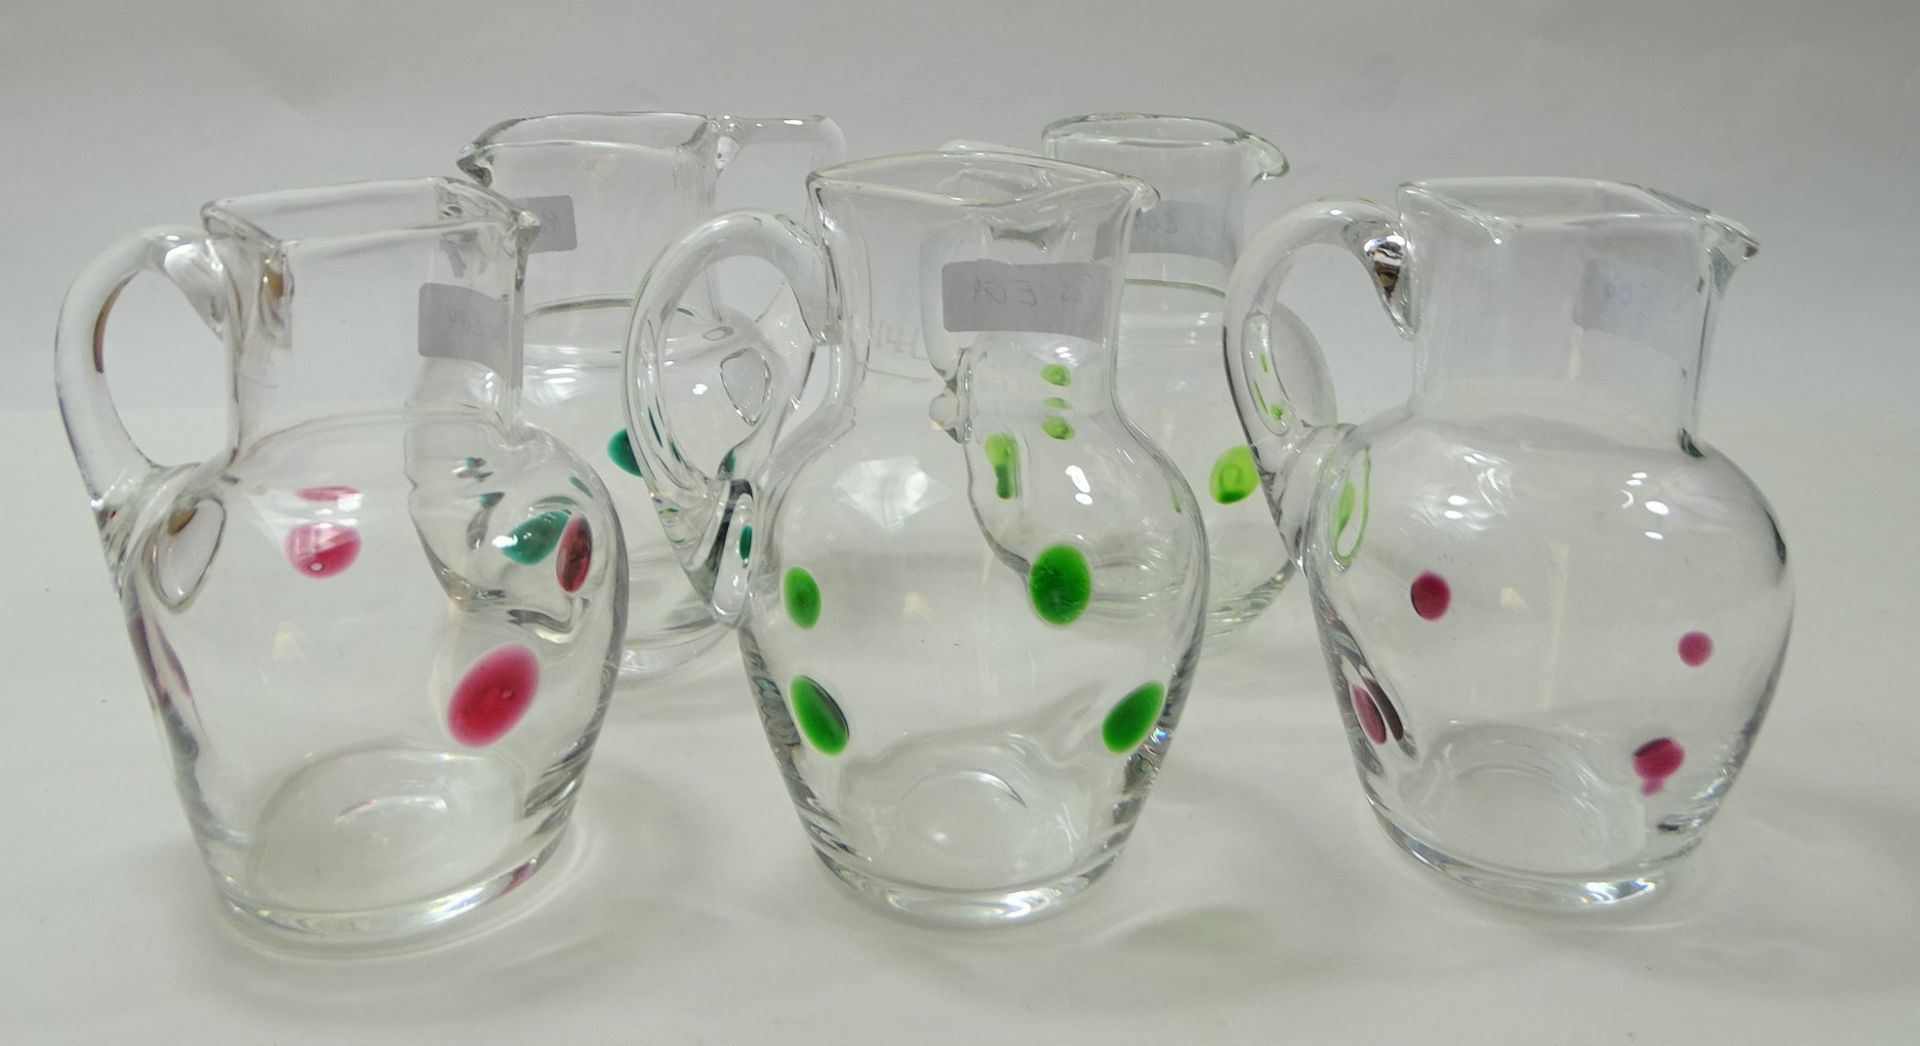 5 Kännchen, klares Glas mit aufgesetzten grünen und roten Punkten, H. 11,5 cm, 3 x eckiger, 1 x run